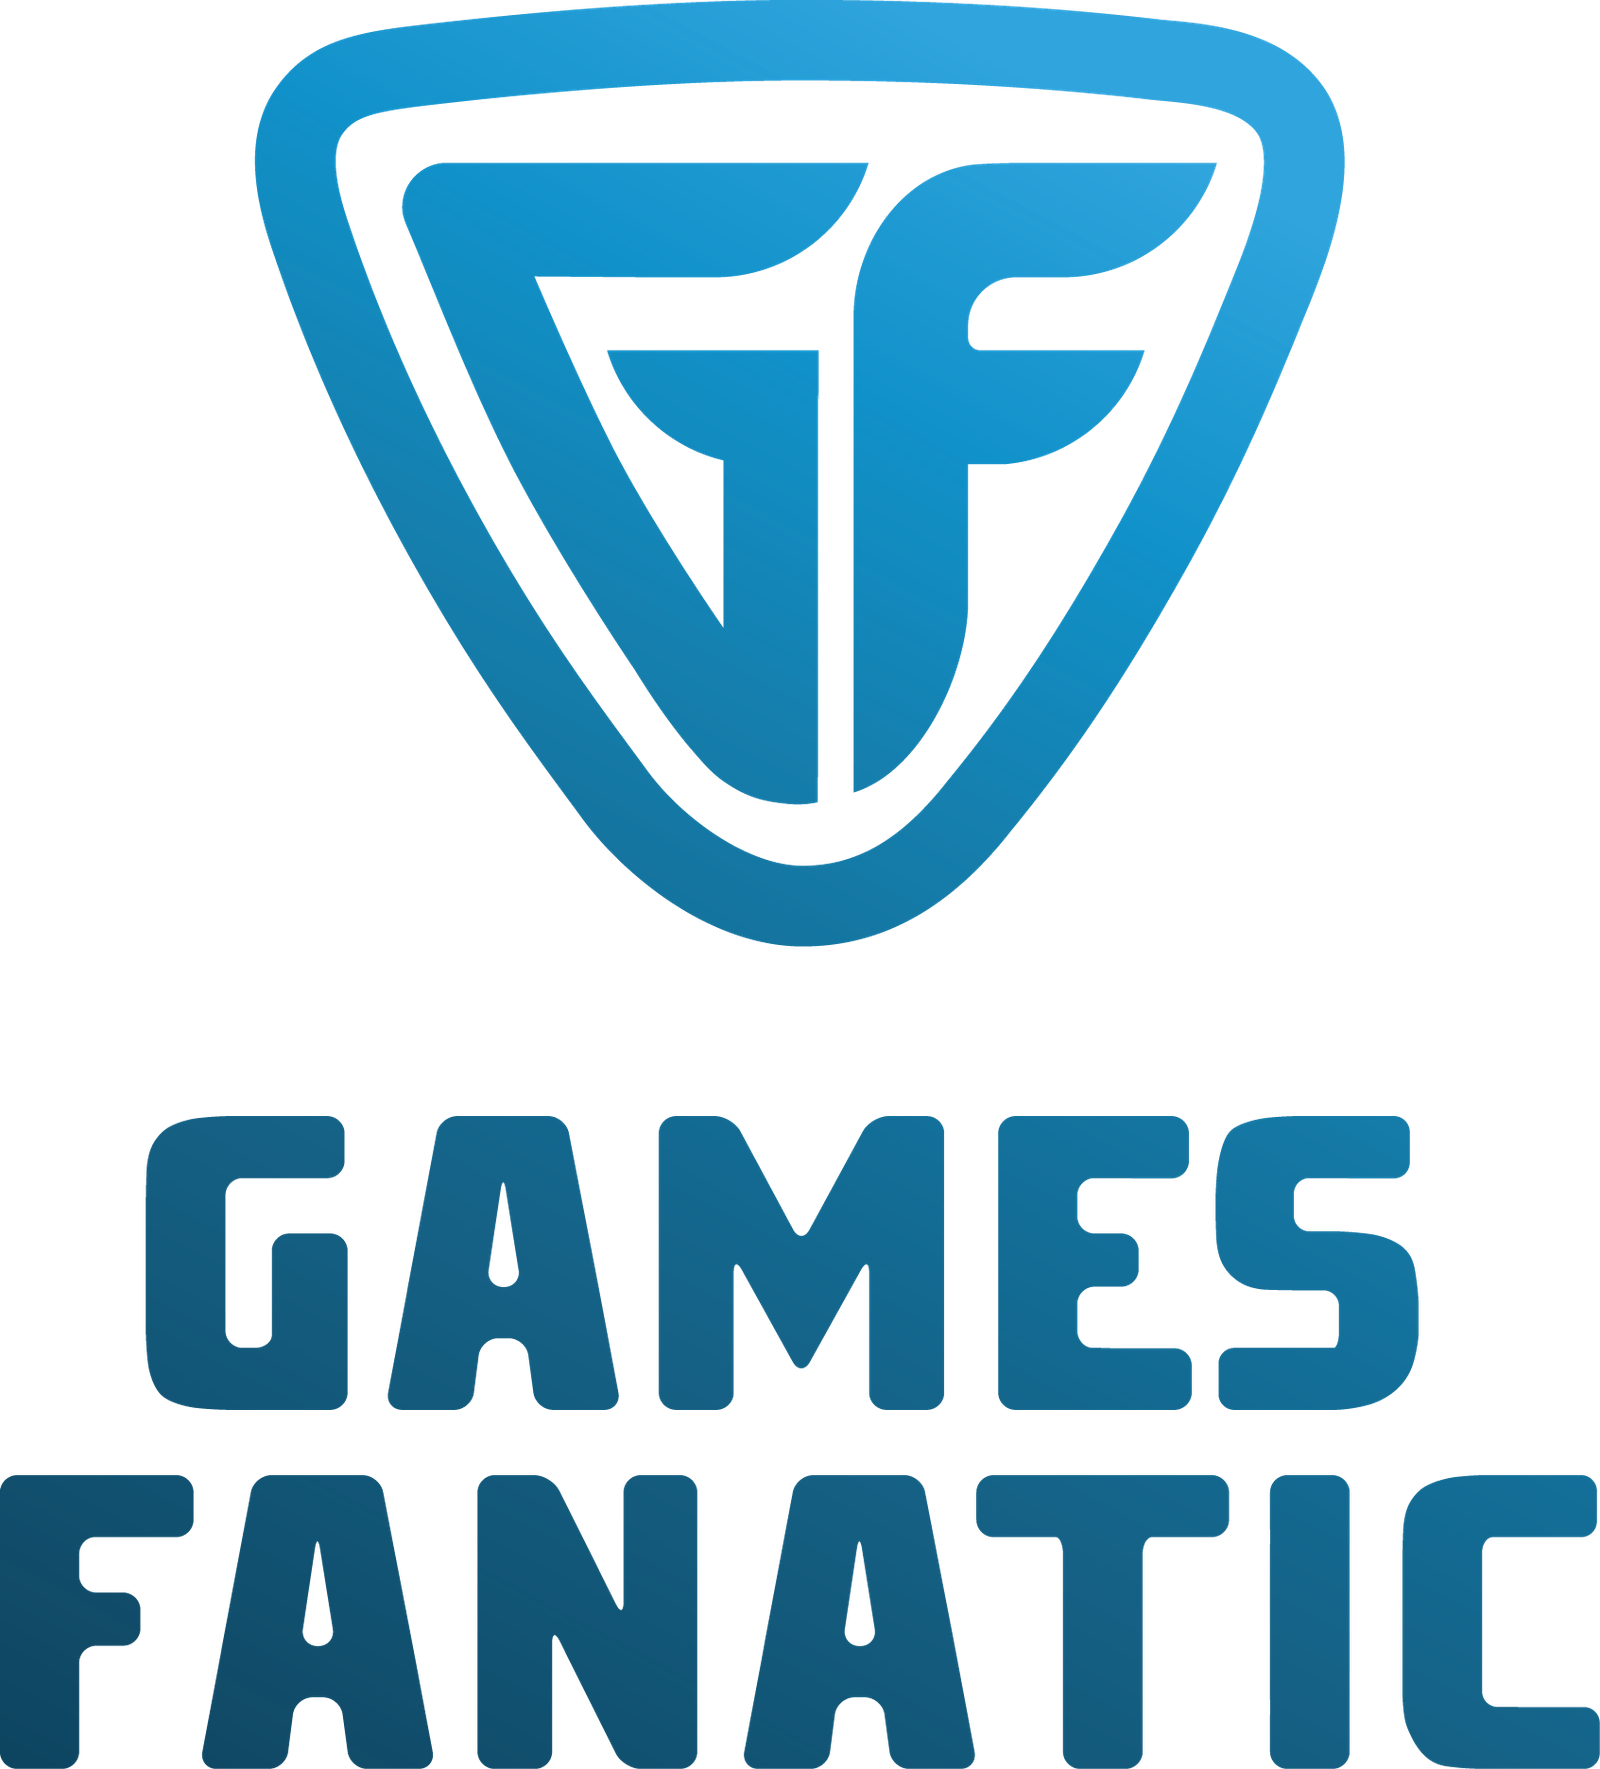 GamesFanatic